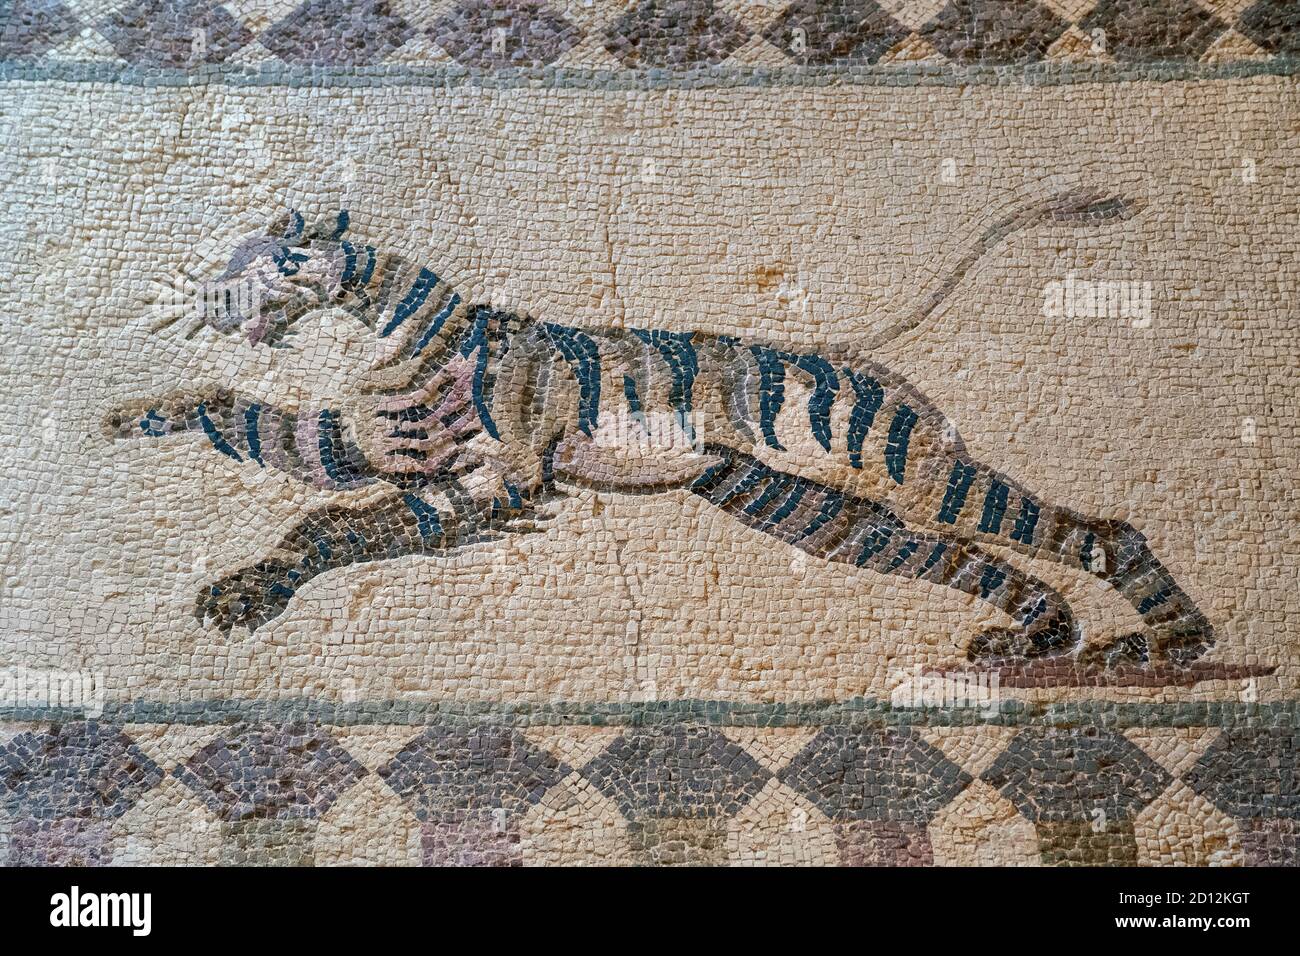 Maison de Dionysos, Parc archéologique de Paphos, Chypre: Scène de chasse mosaïque représentant un tigre courant. Banque D'Images